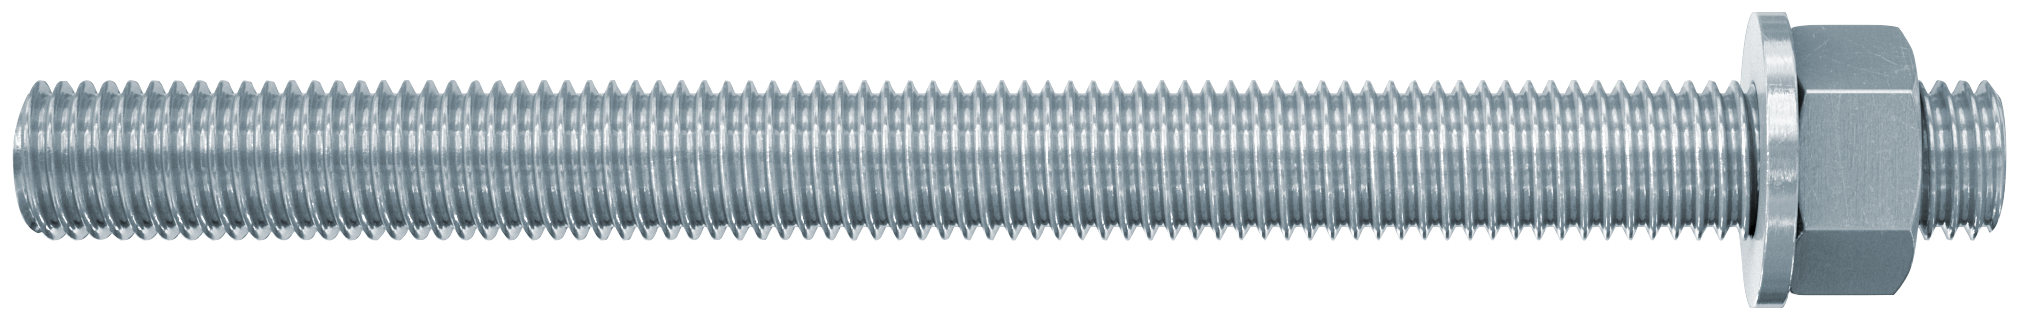 fischer Barre filettate in acciaio FIS A M 16 X 130 8.8 (1 Pz.) Barra filettata in acciaio zincato con classe di resistenza 8.8, con taglio dritto, dado e rosetta fie2255